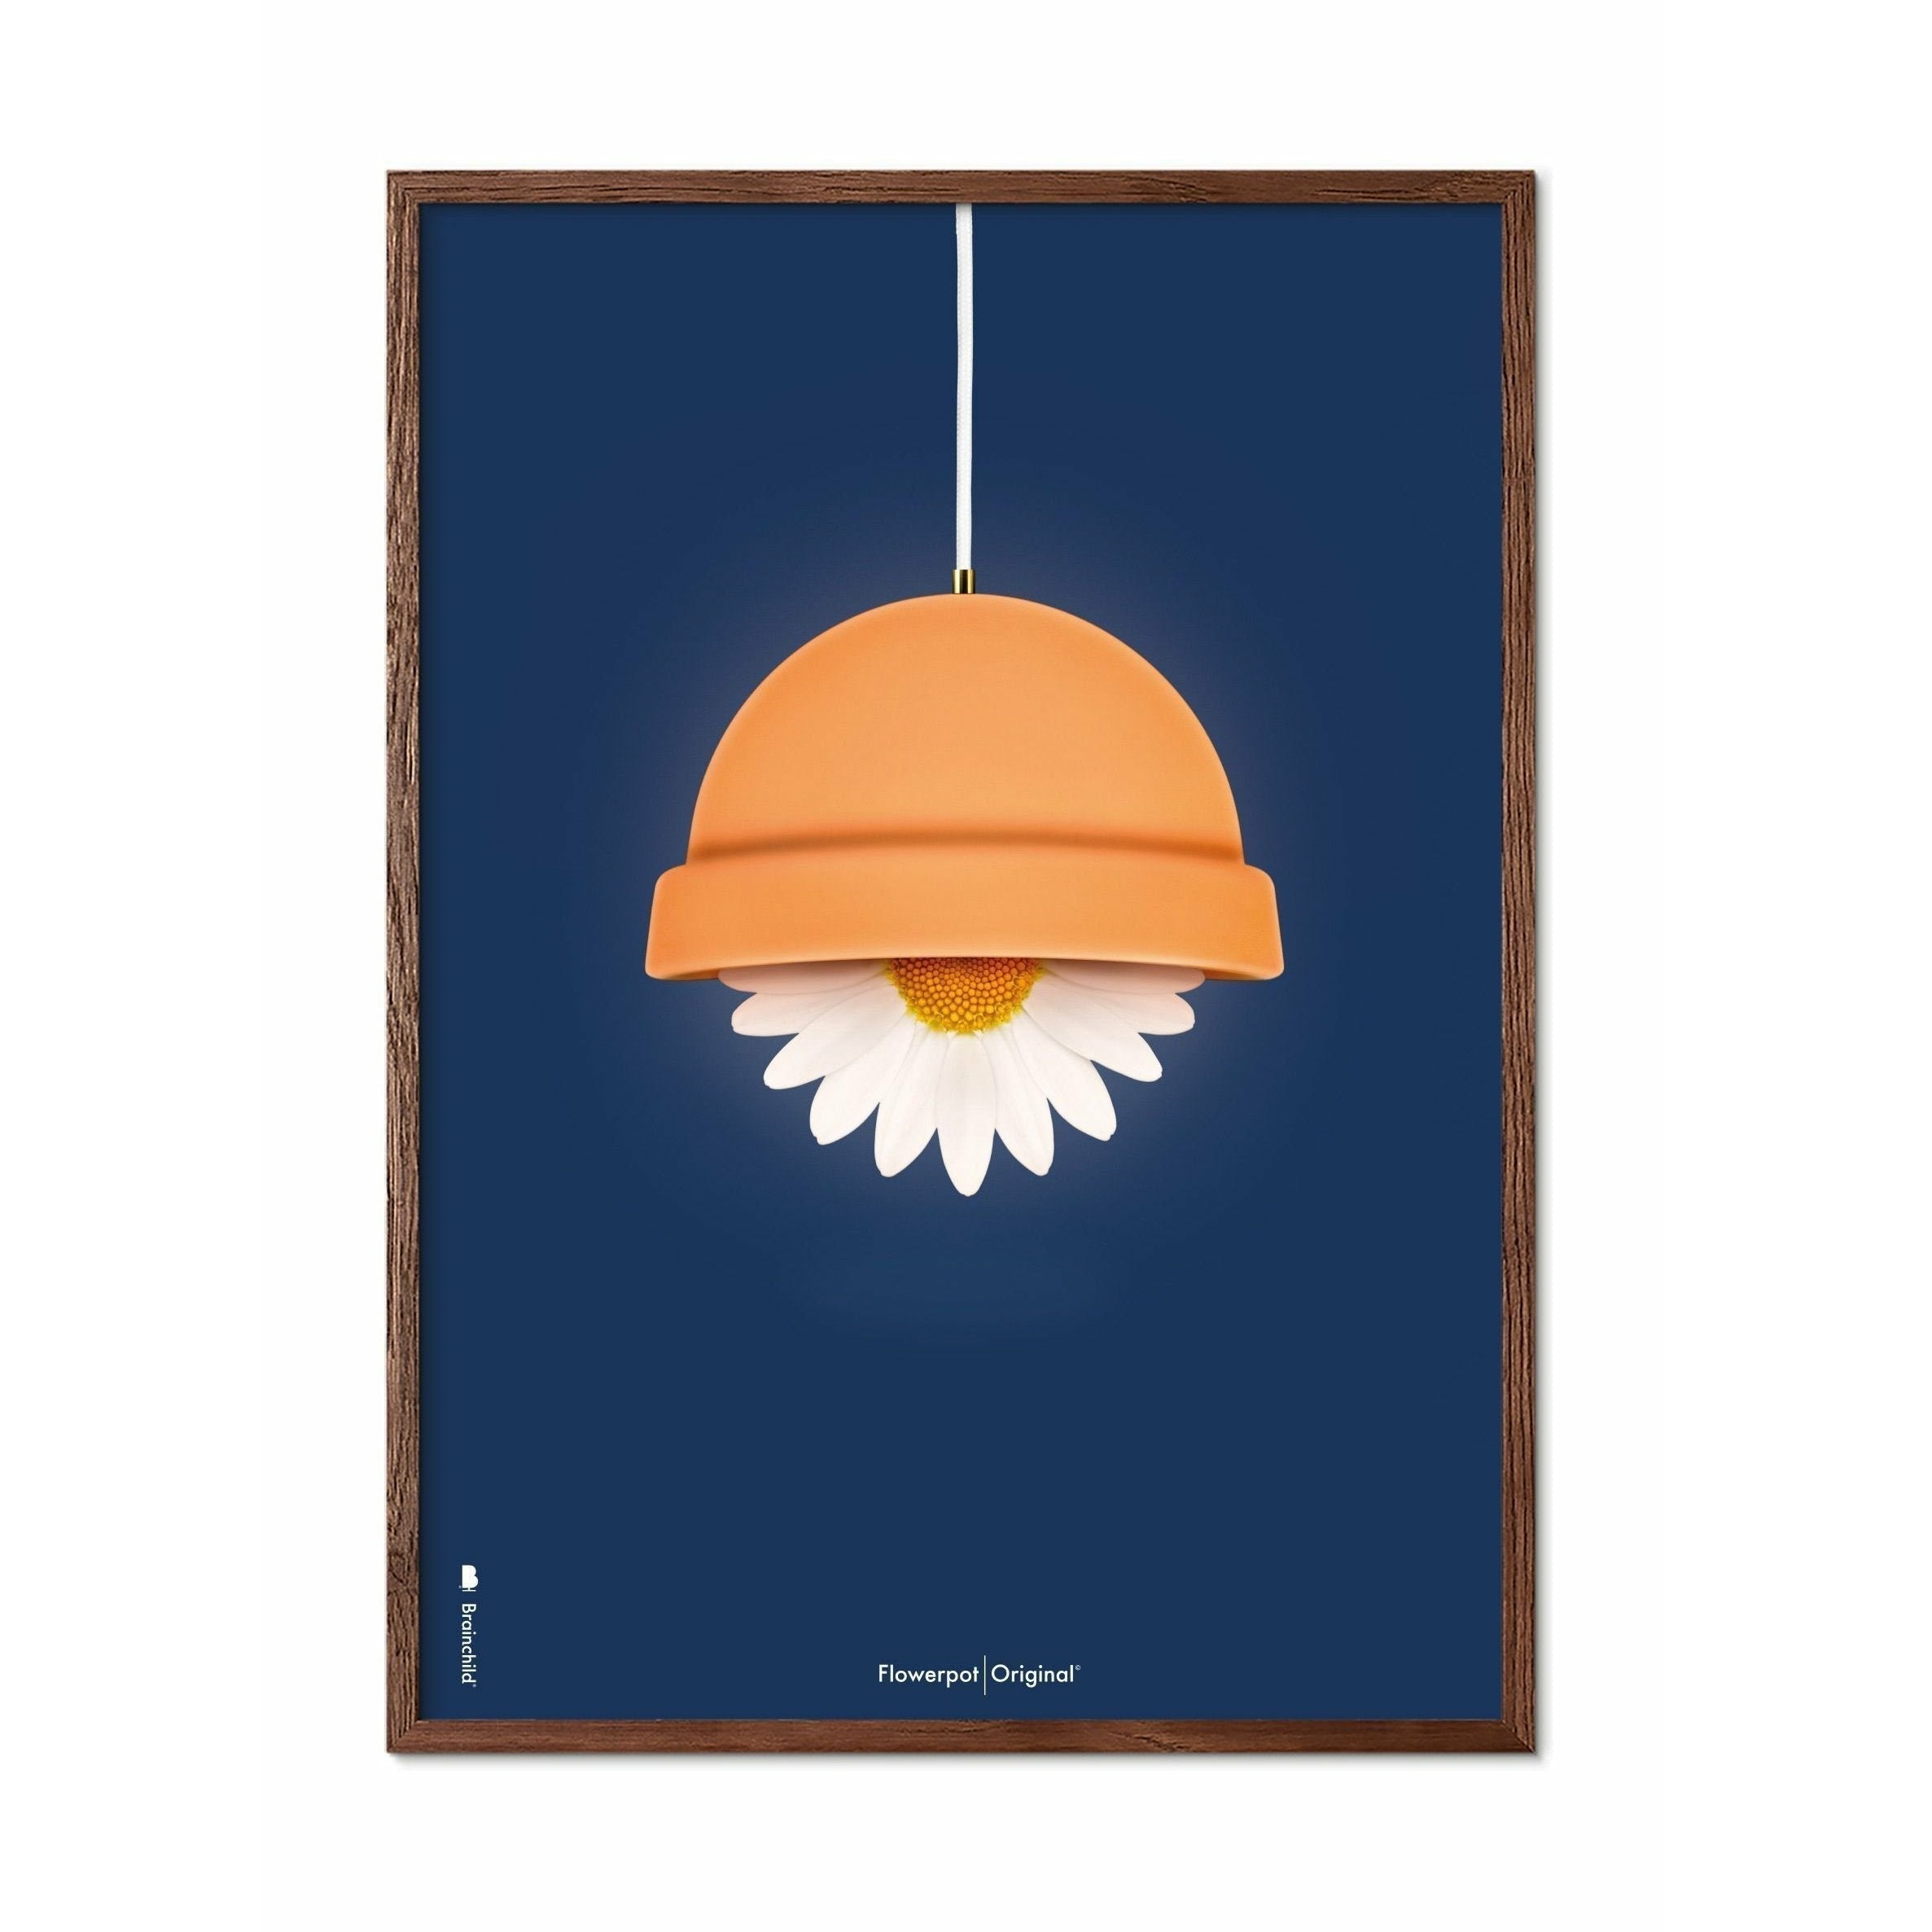 Brainchild Flowerpot Classic Poster, Dark Wood Frame A5, Dark Blue Background